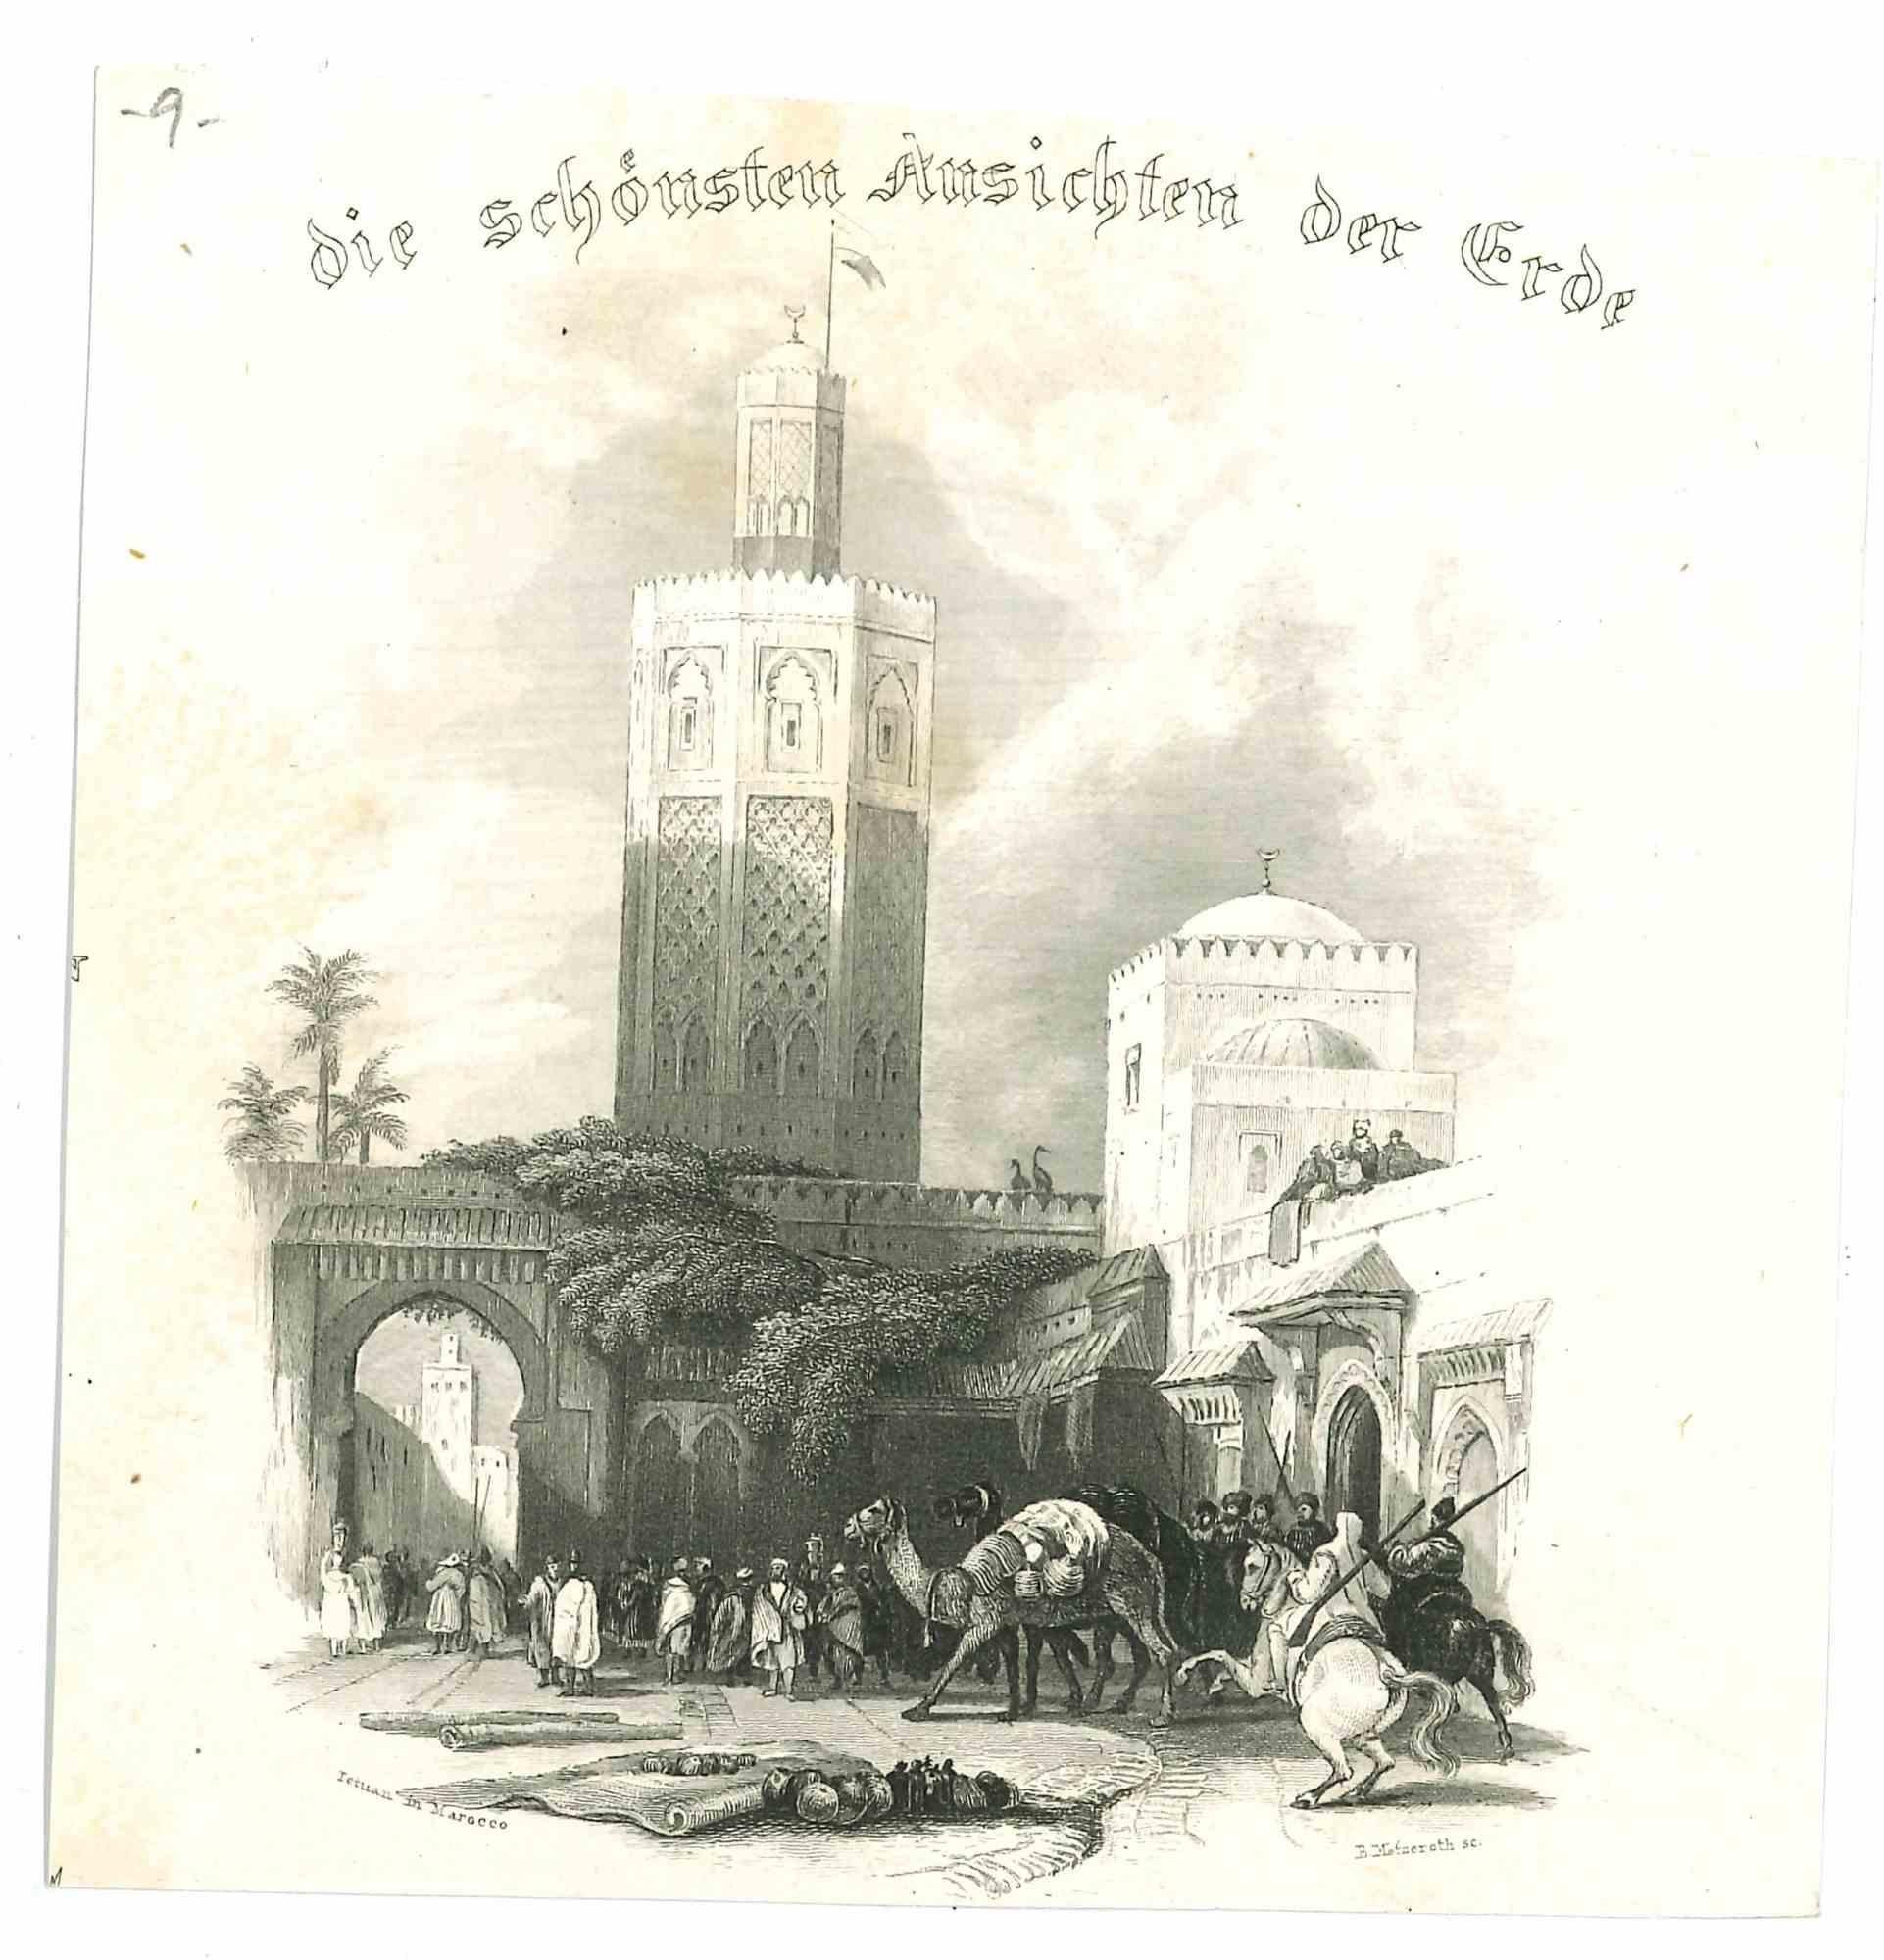 Unknown Figurative Print - Die Schönsten Aussichten der Erde - Original Lithograph - 1850s